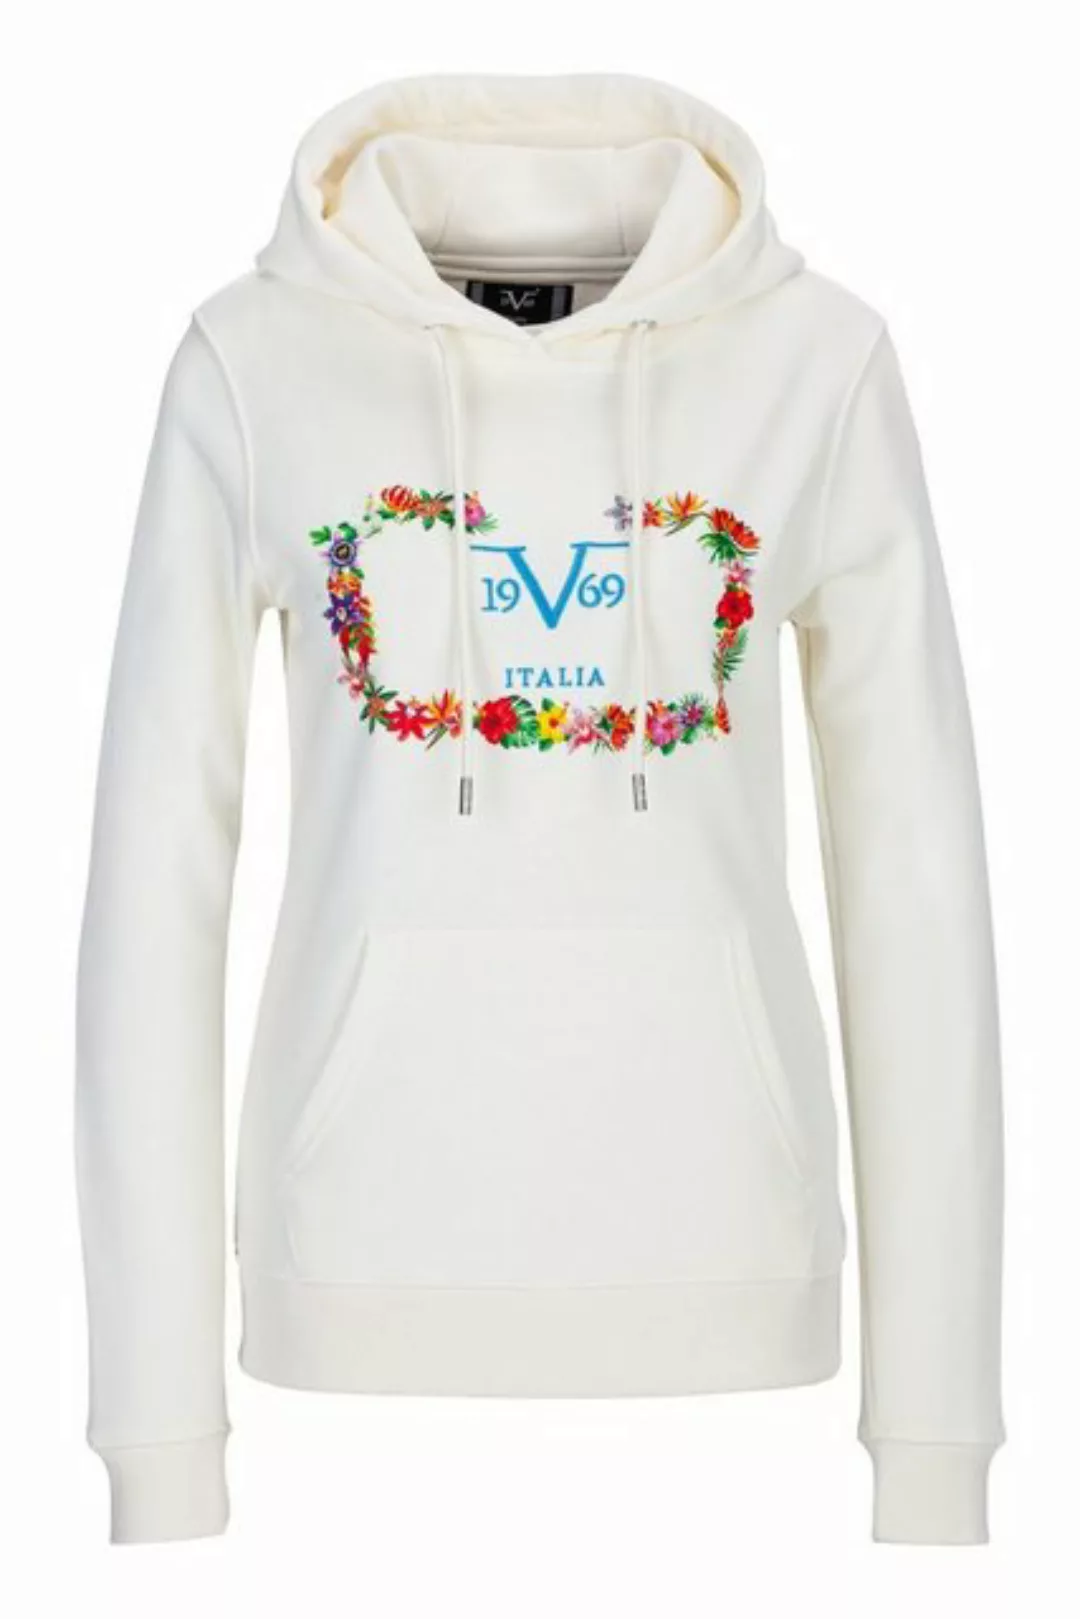 19V69 Italia by Versace Hoodie HOLDA Damen Kapuzenpullover mit Blumenkranz günstig online kaufen